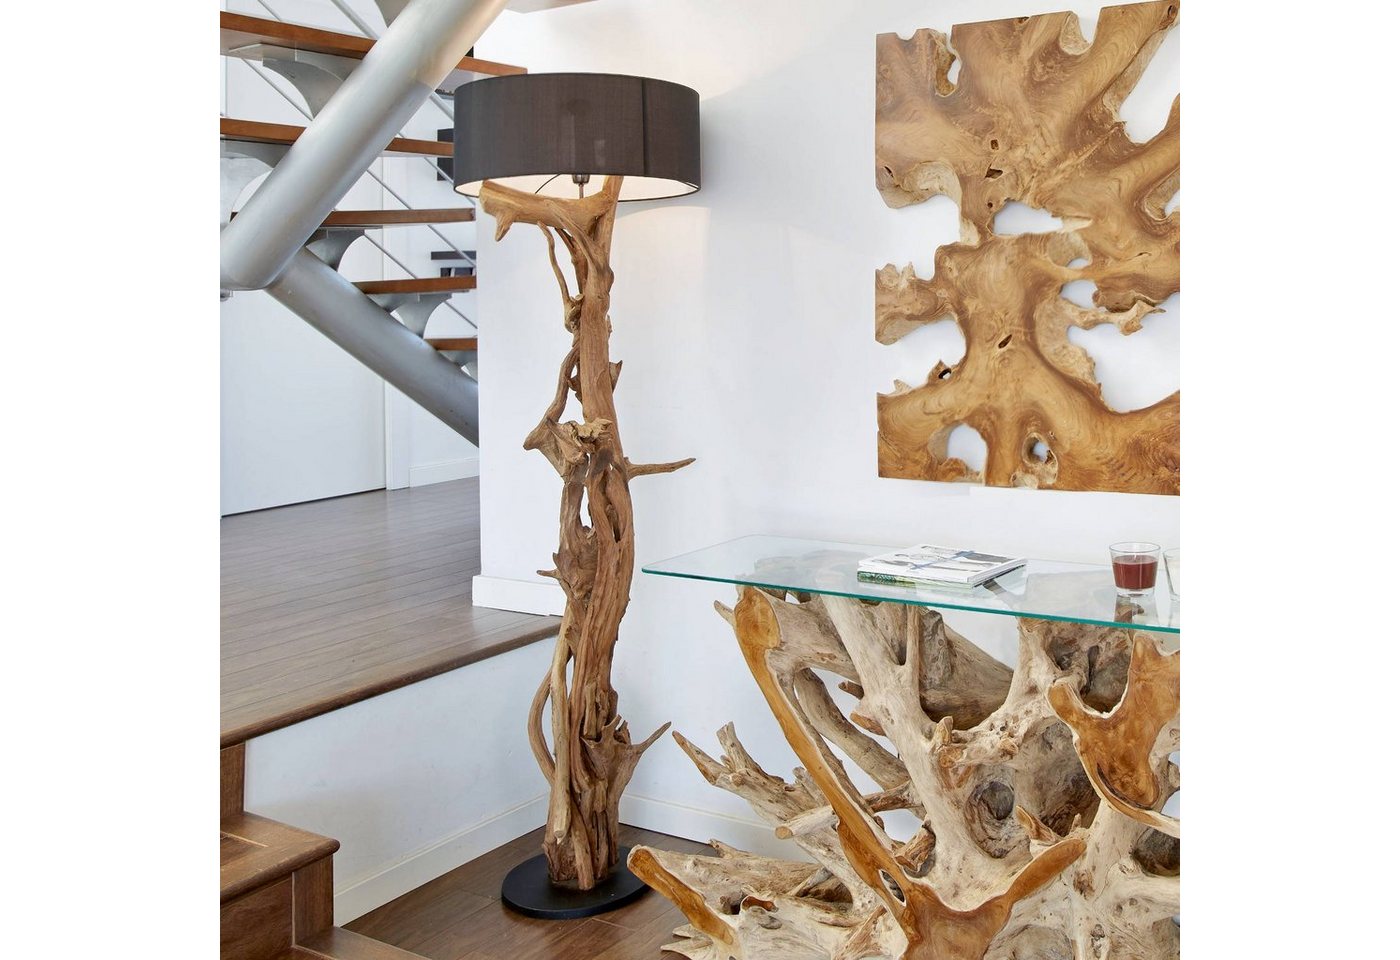 ExotischerLeben Stehlampe Bluma Stehlampe Teakholz 180 cm - Handarbeit aus Treibholz von ExotischerLeben